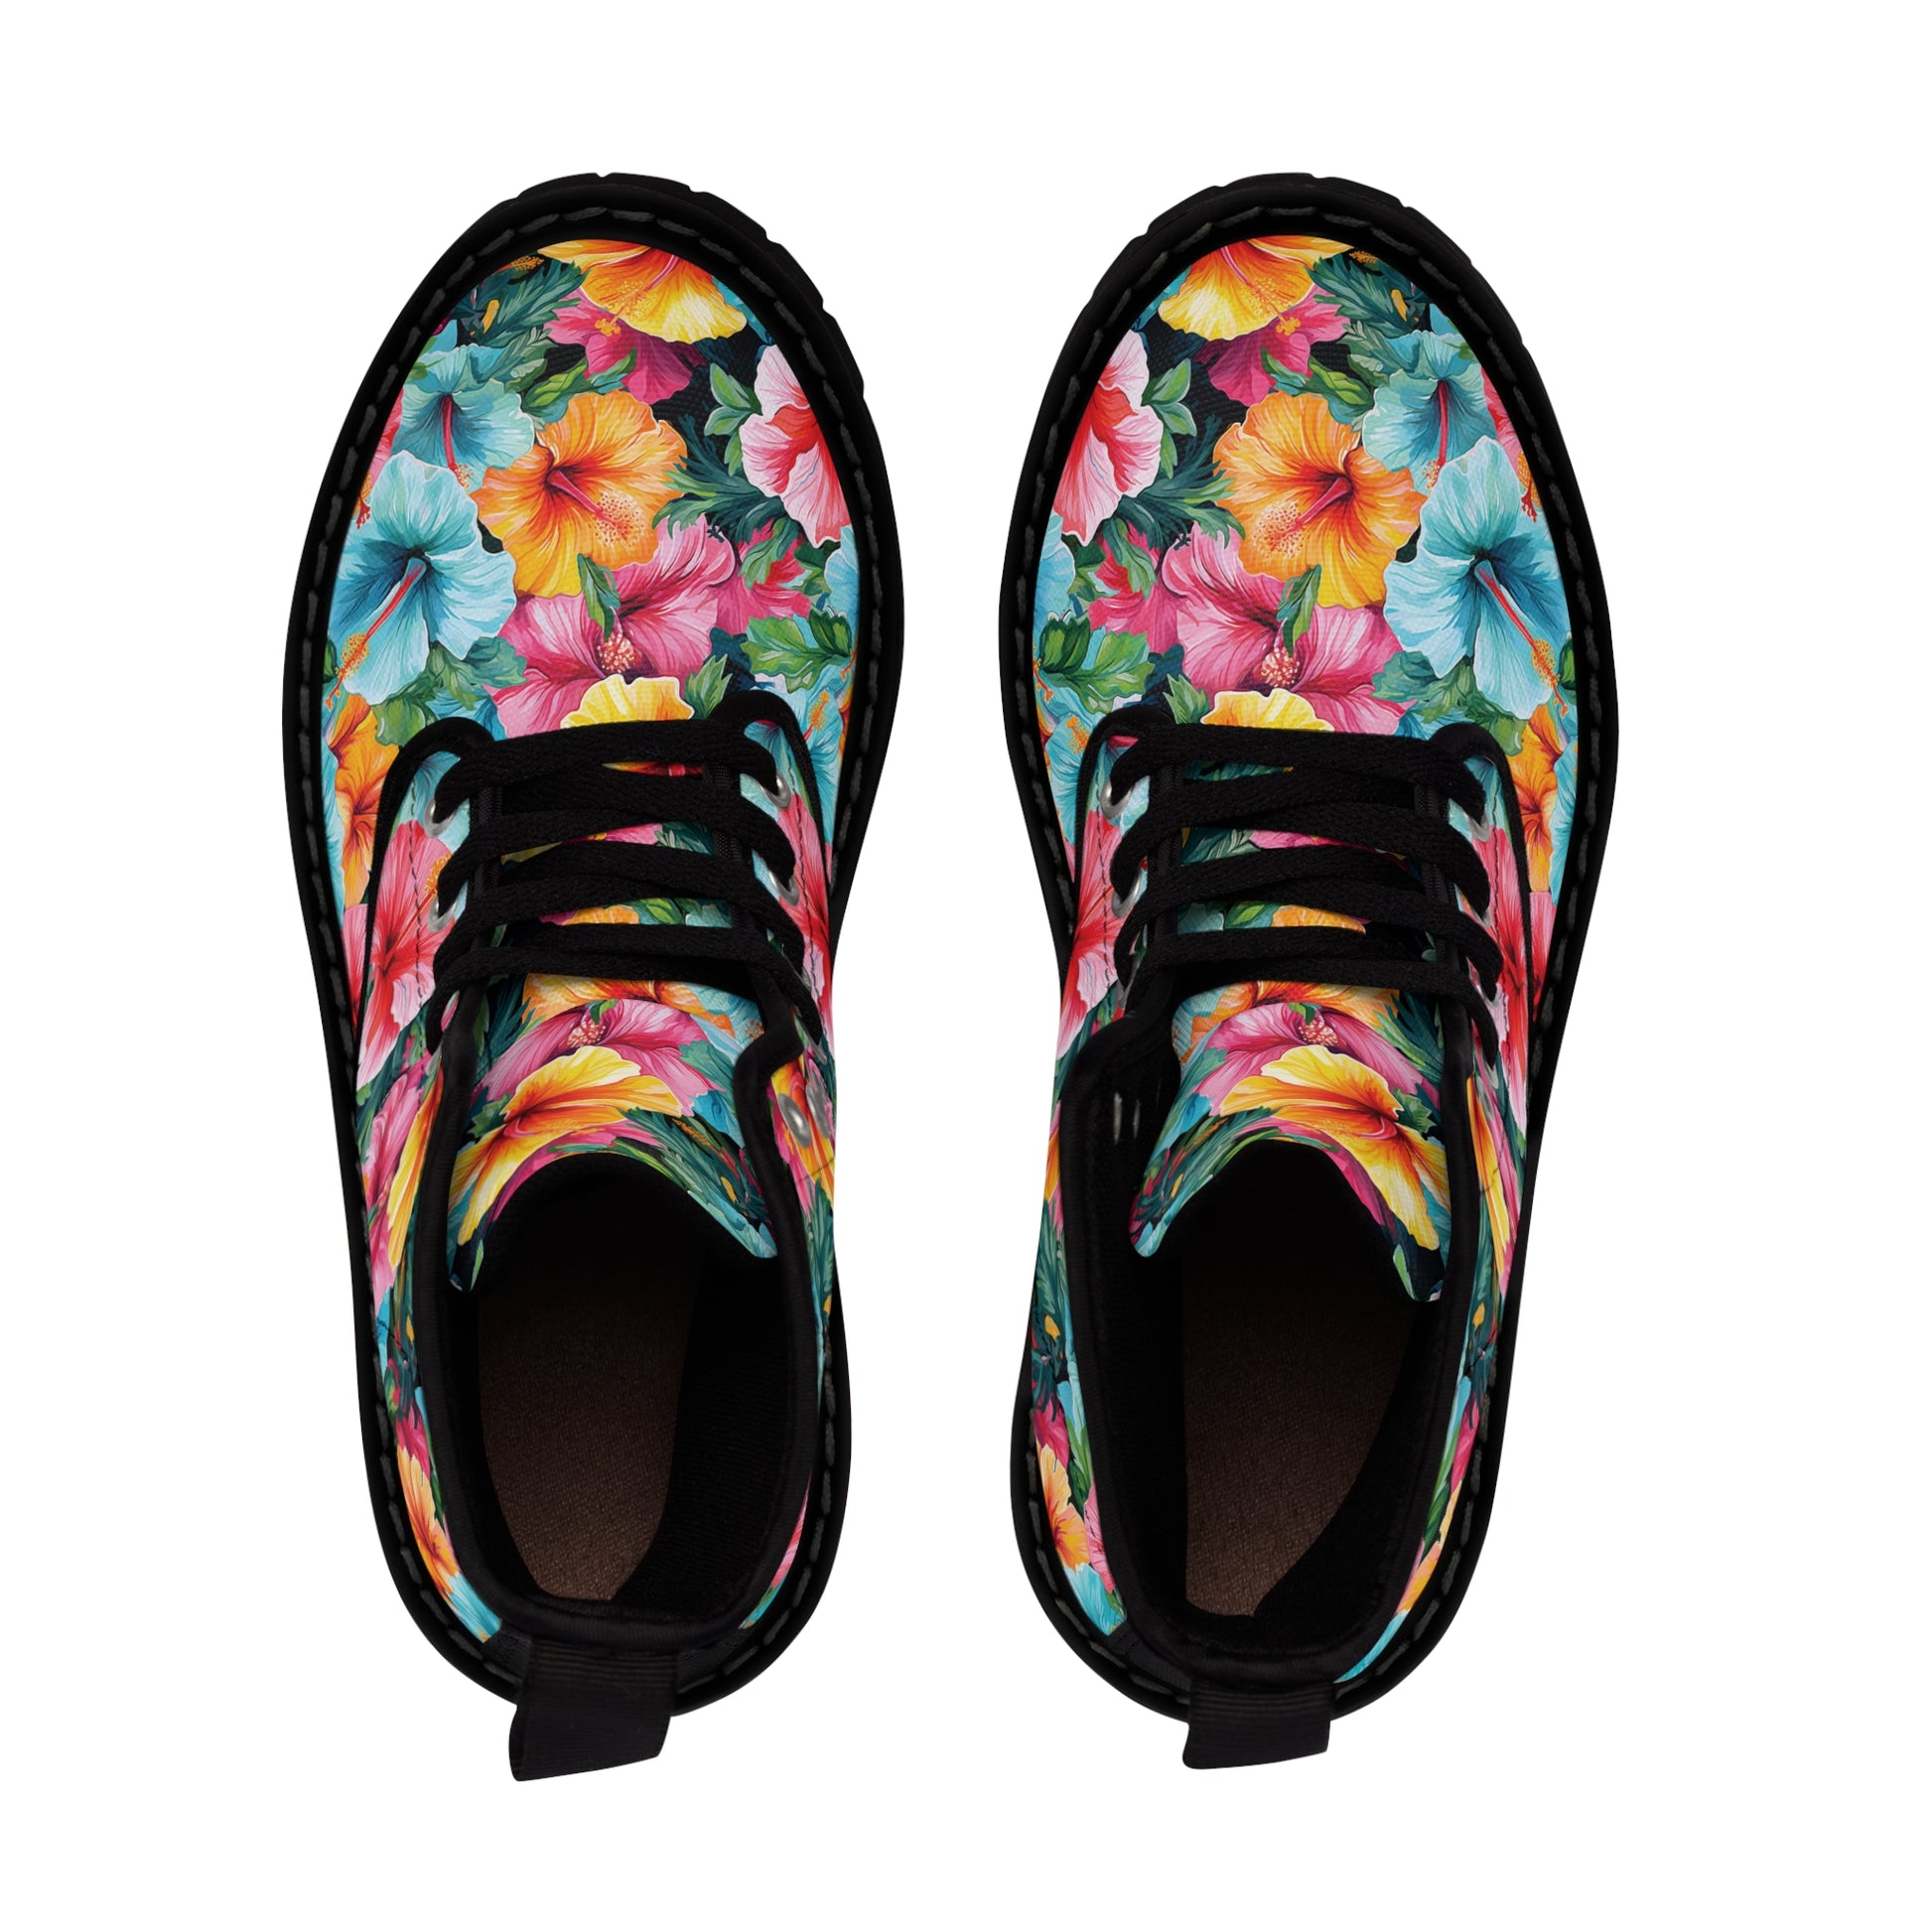 Watercolor Hibiscus (Light #2) Men's Canvas Boots (Black) by Studio Ten Design